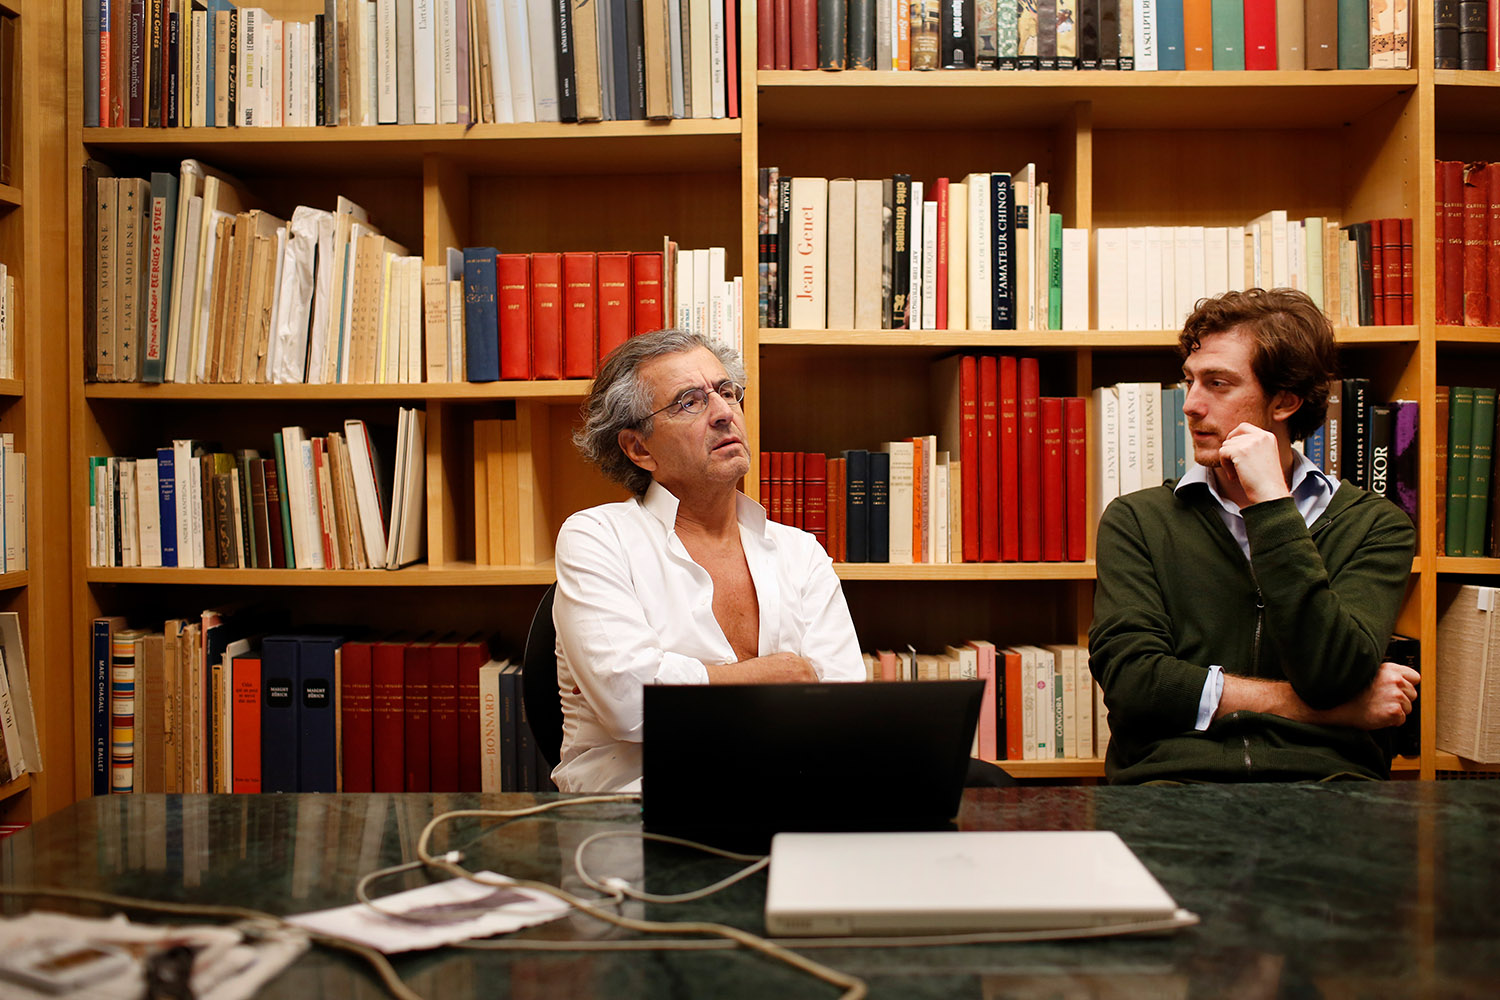 Bernard-Henri Lévy et Tancrède Hertzog parlent dans une bibliothèque, celle de la Fondation Maeght